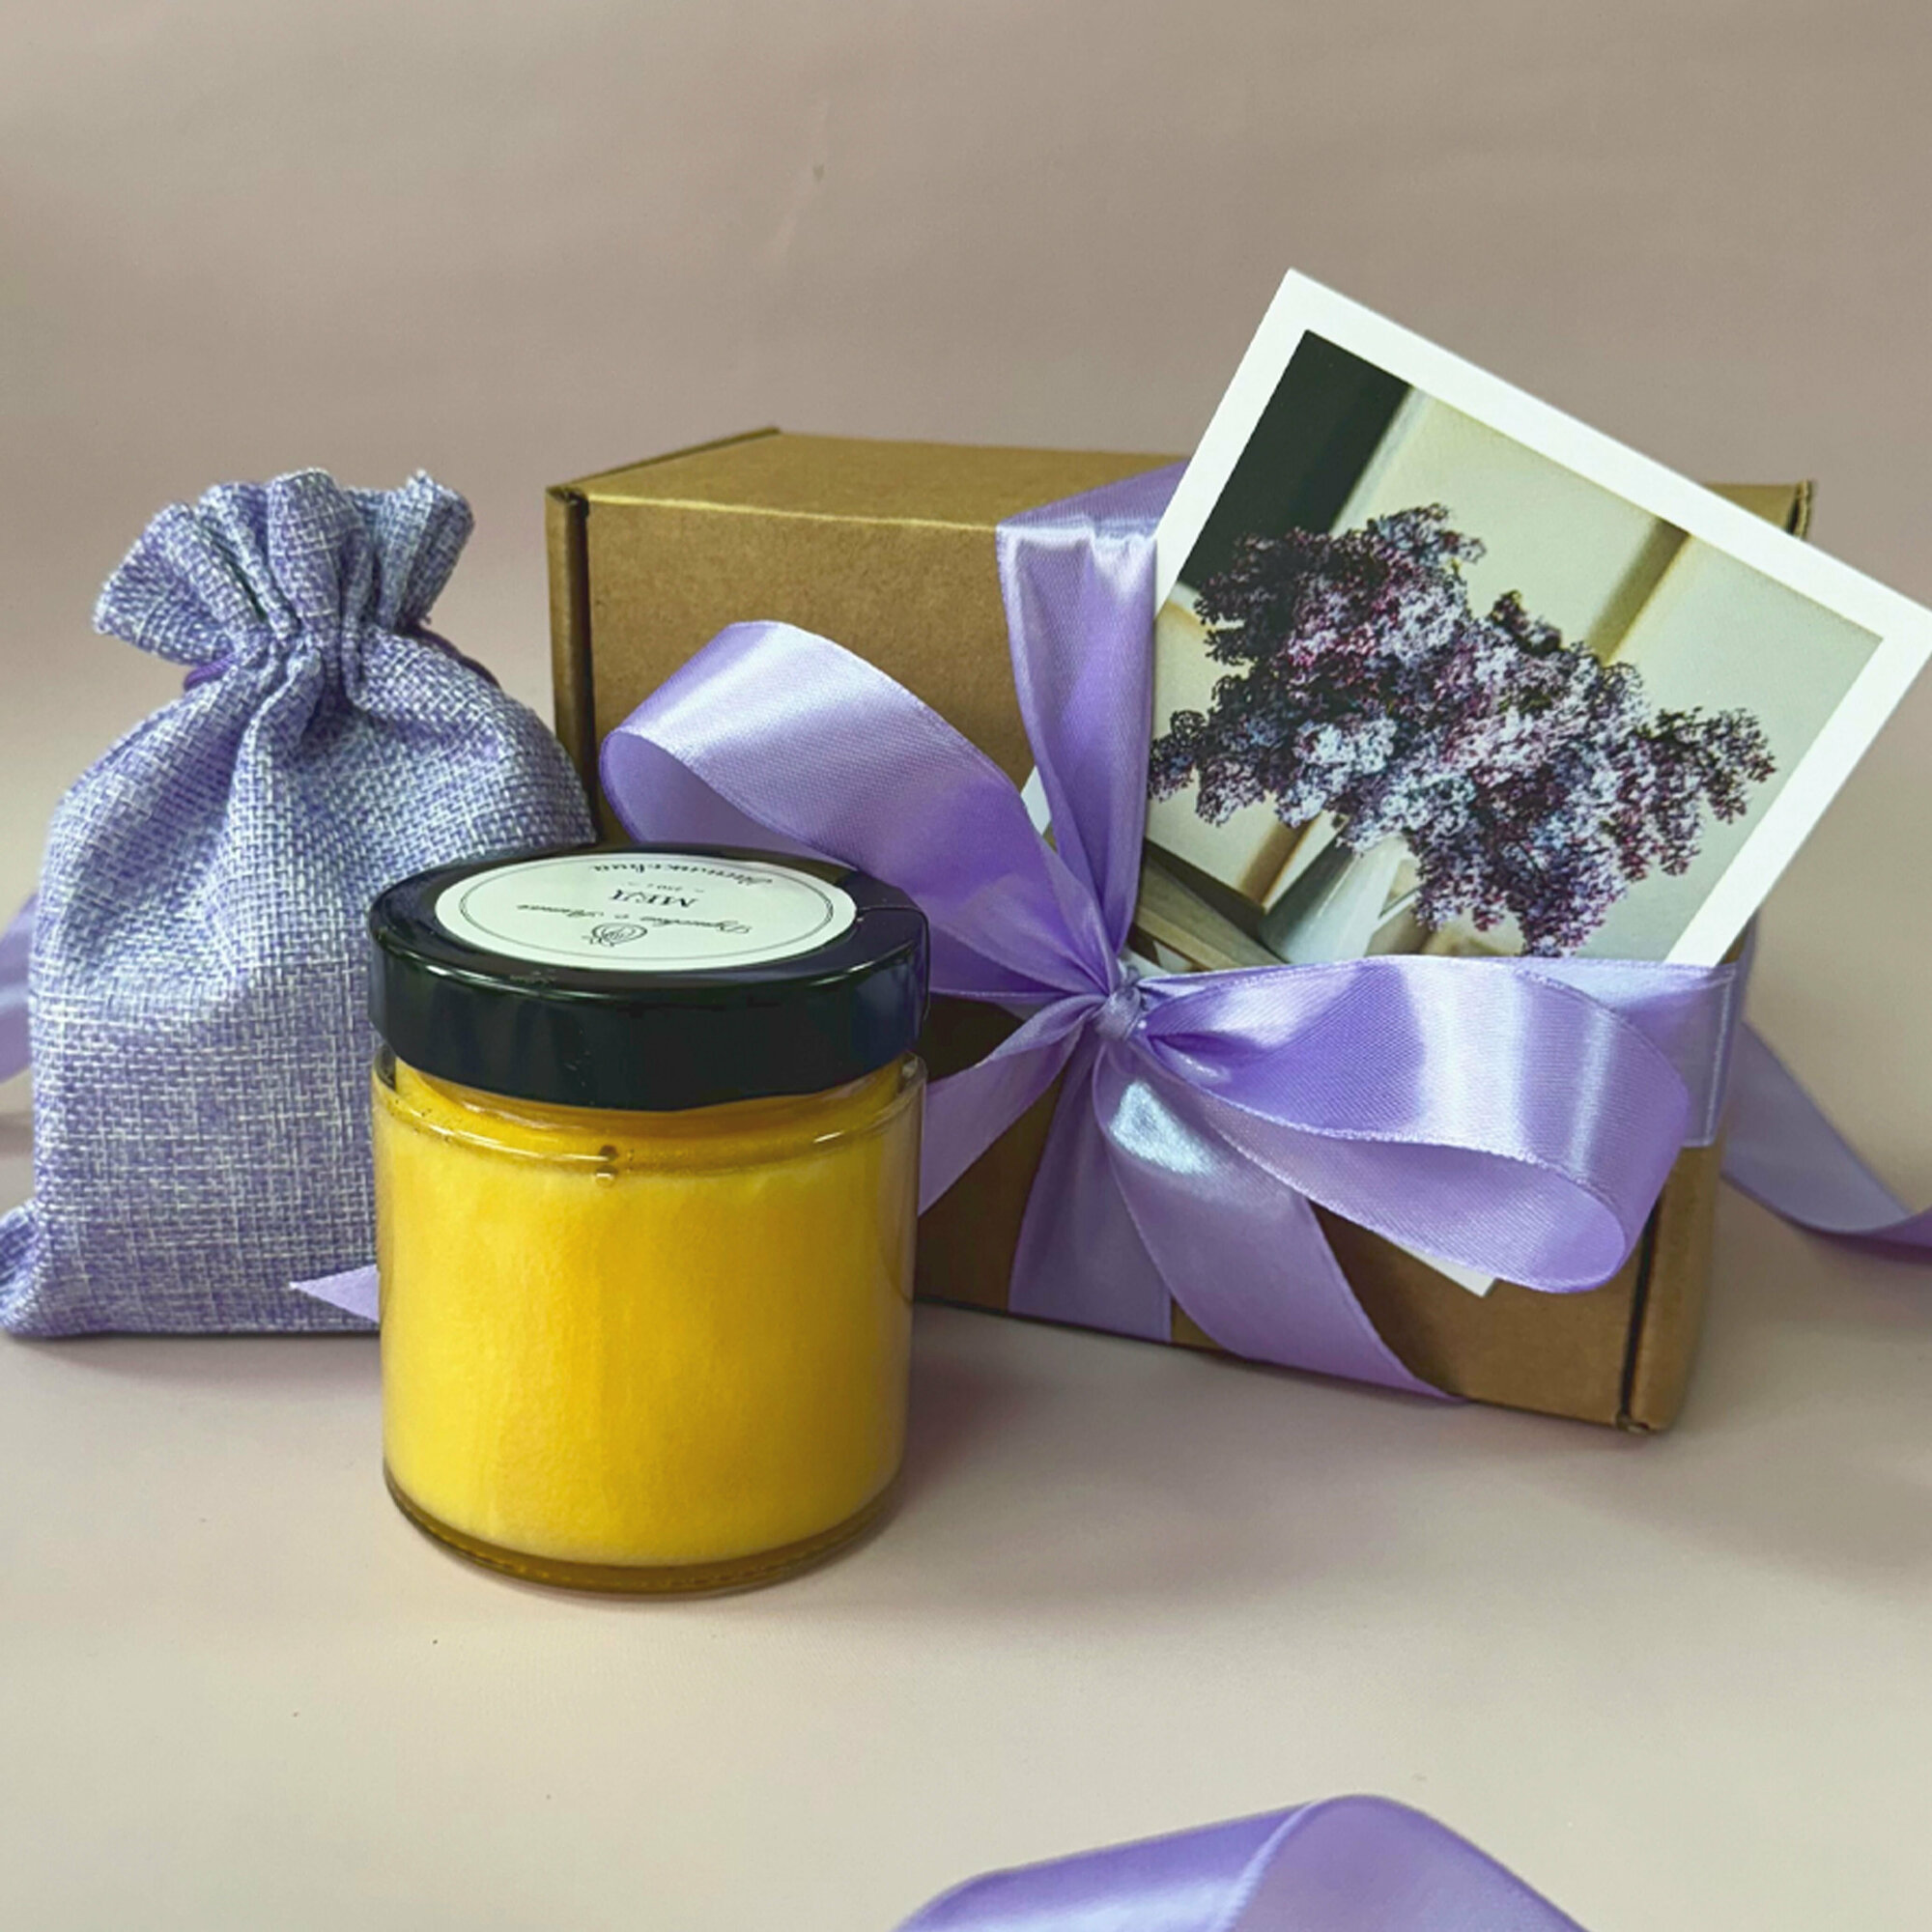 Подарочный набор "Медово-чайный презент в лавандовом цвете", подарочный бокс с медом и чаем учителю, воспитателю, коллеге